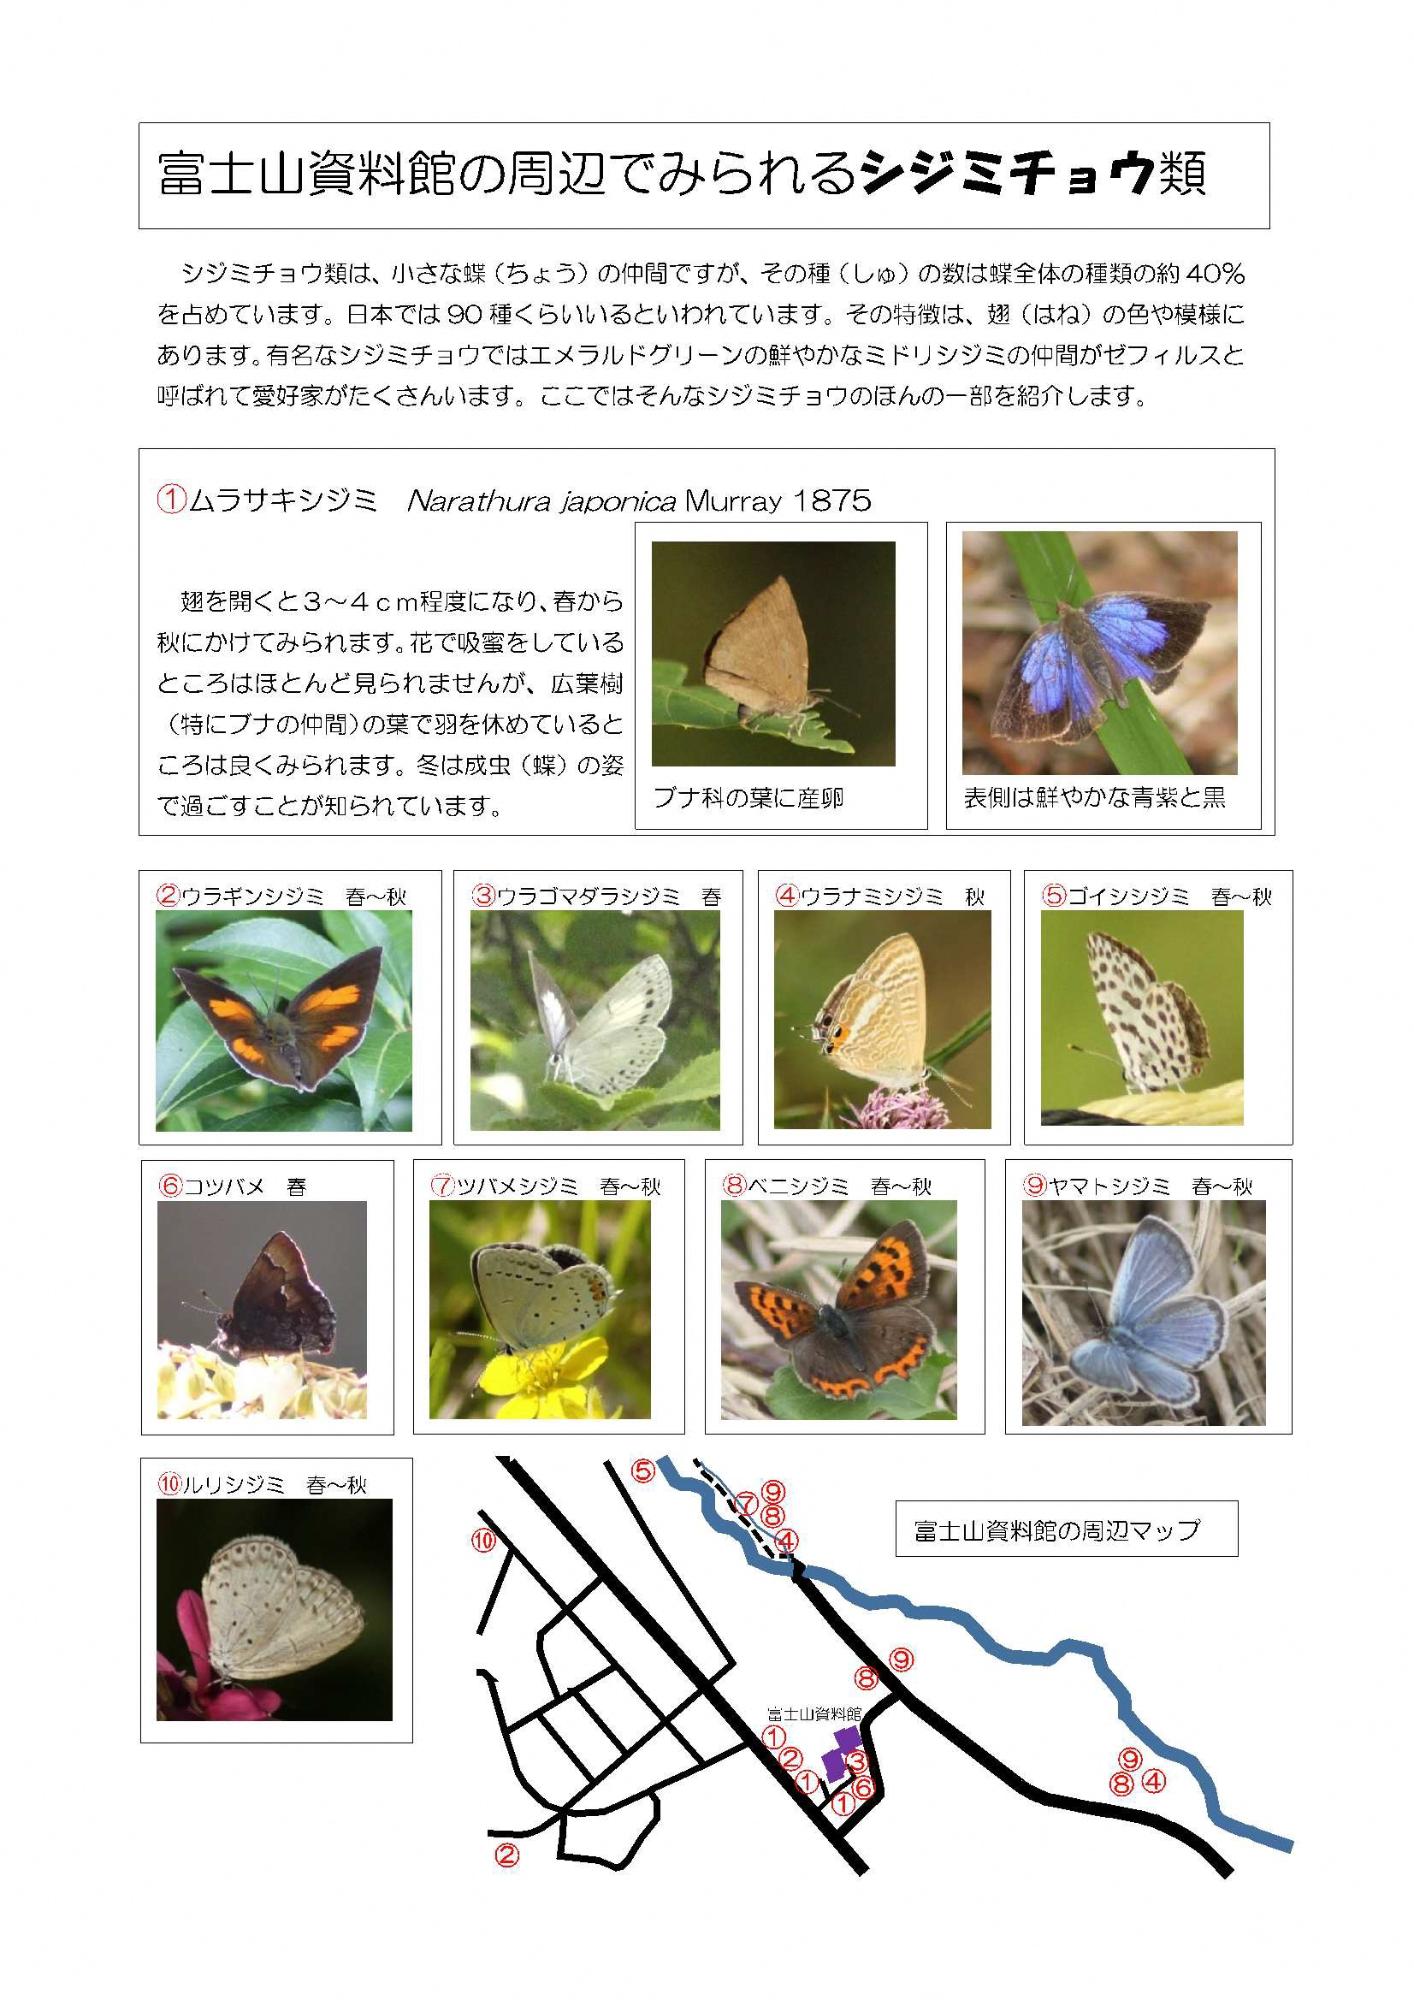 富士山資料館の周辺でみられるシジミチョウ類